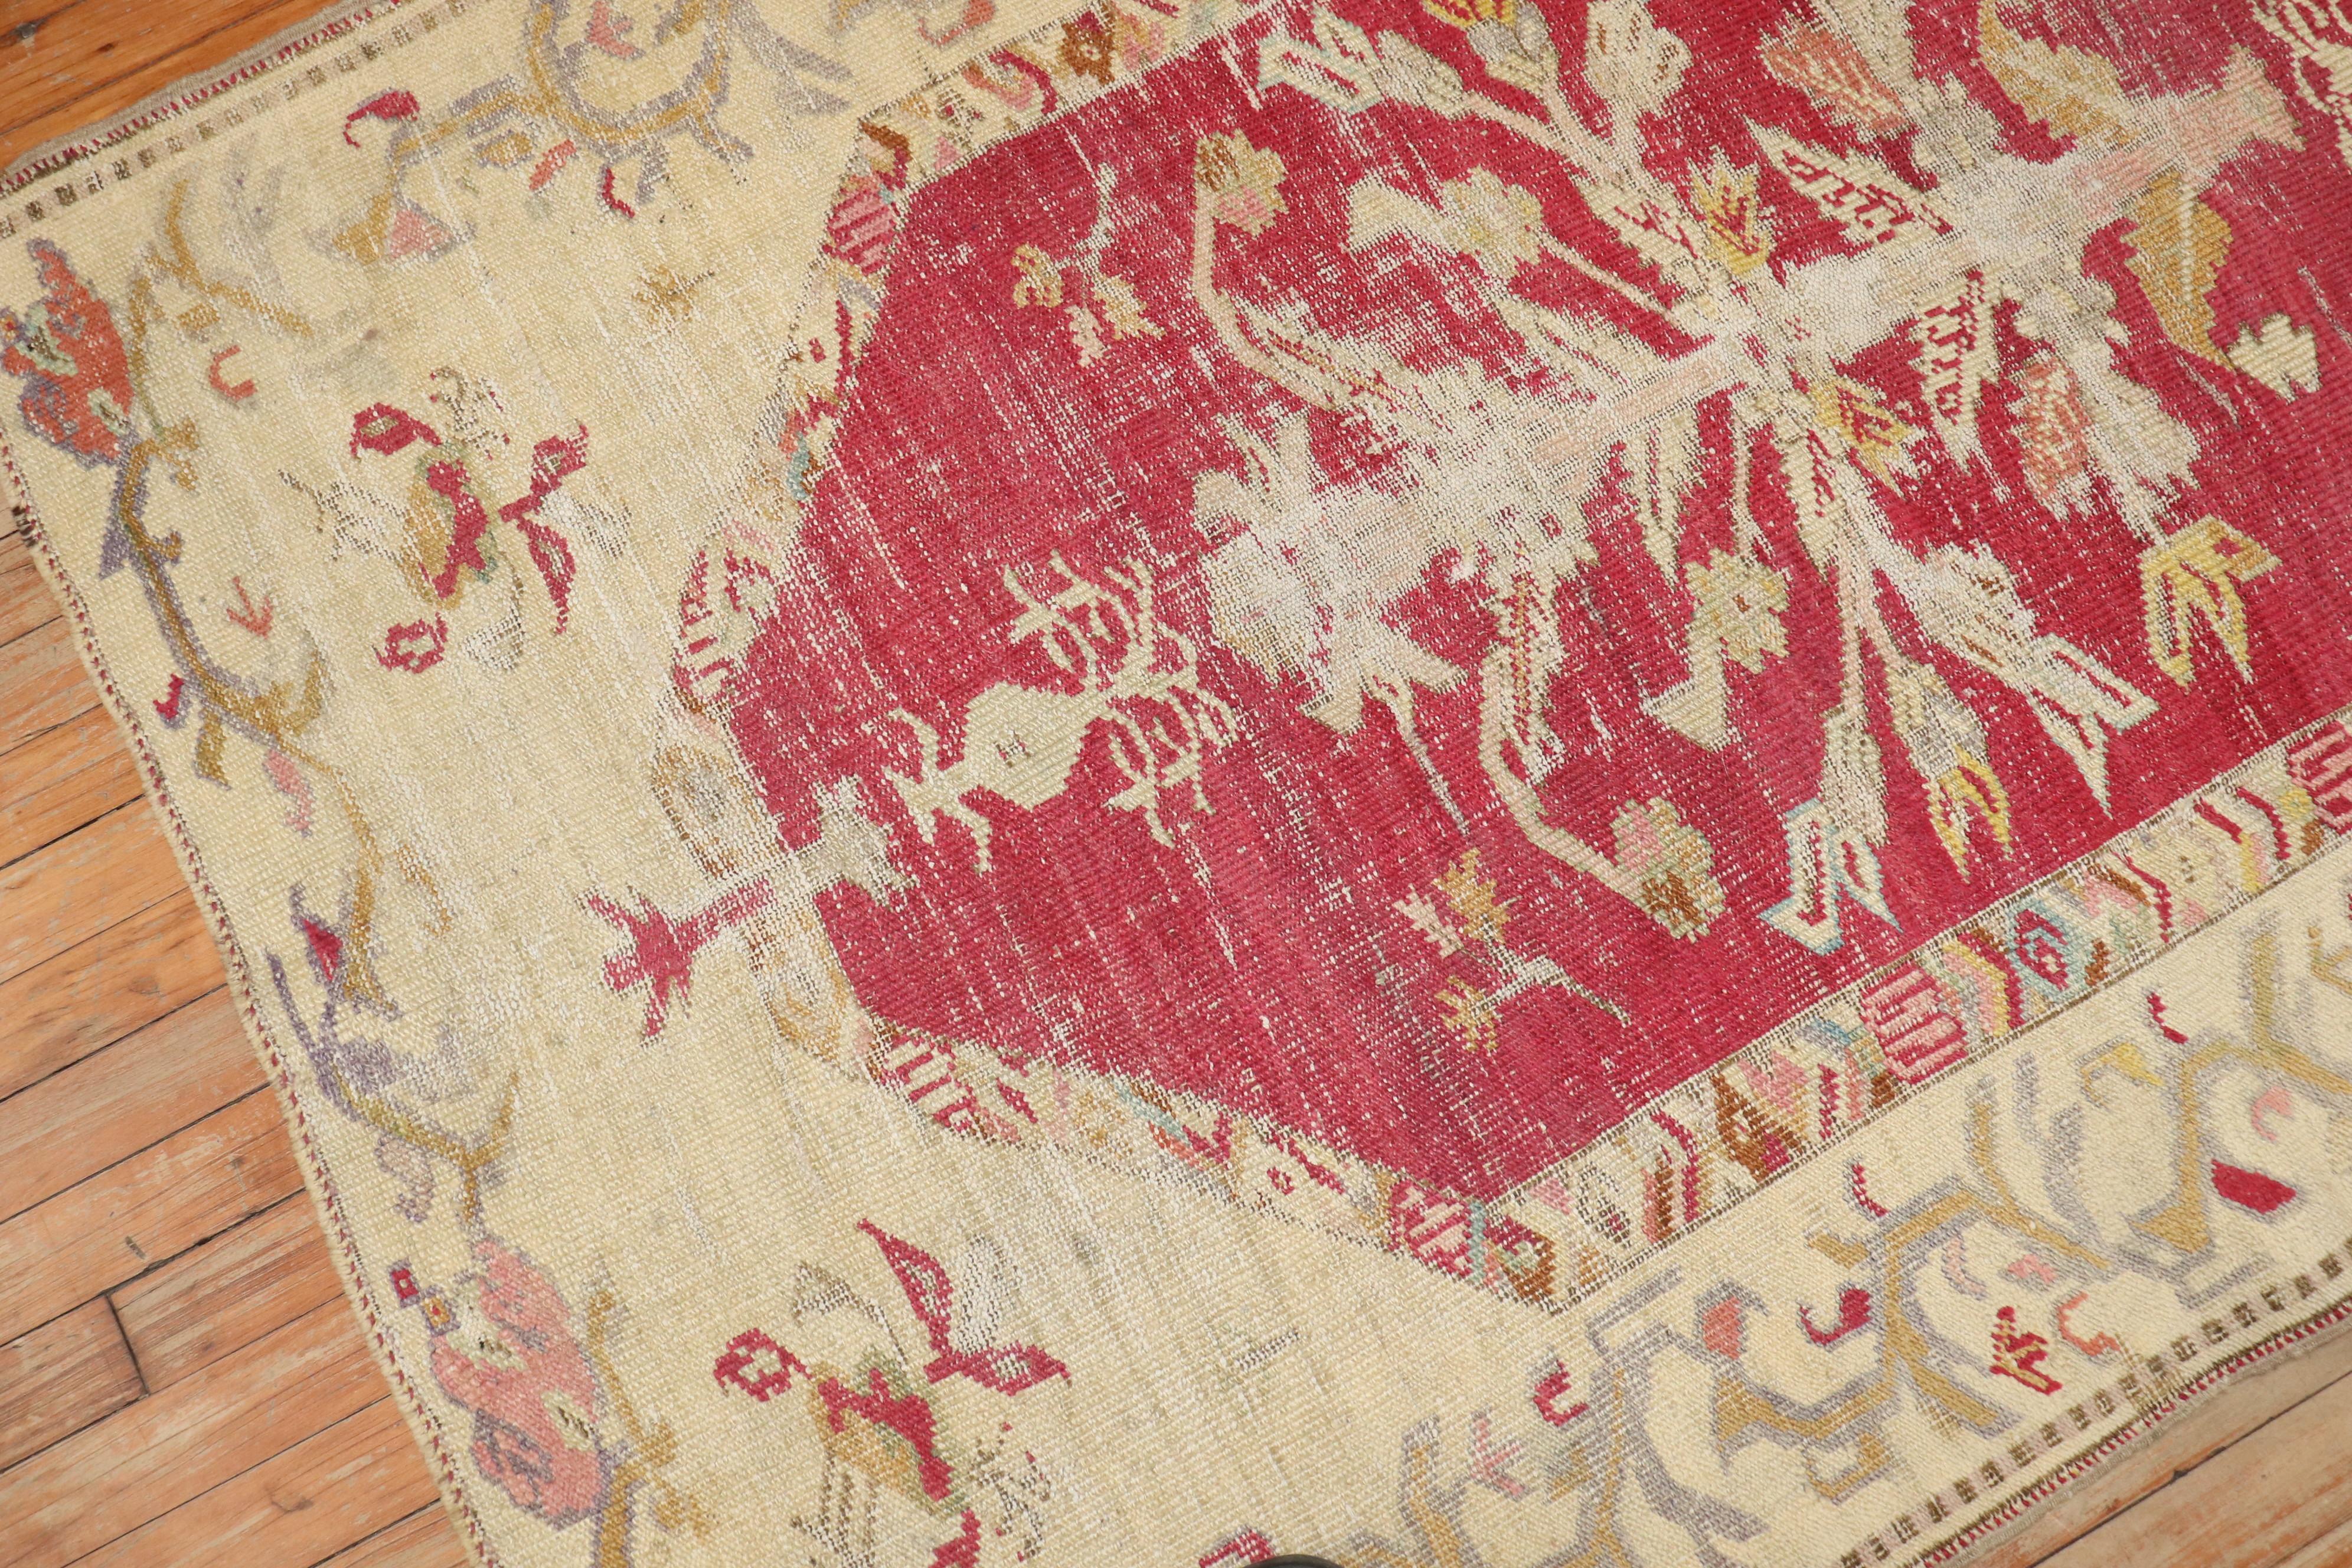 Fin du 19ème siècle, tapis turc ghiordes de taille accentuée

3'10'' x 6'